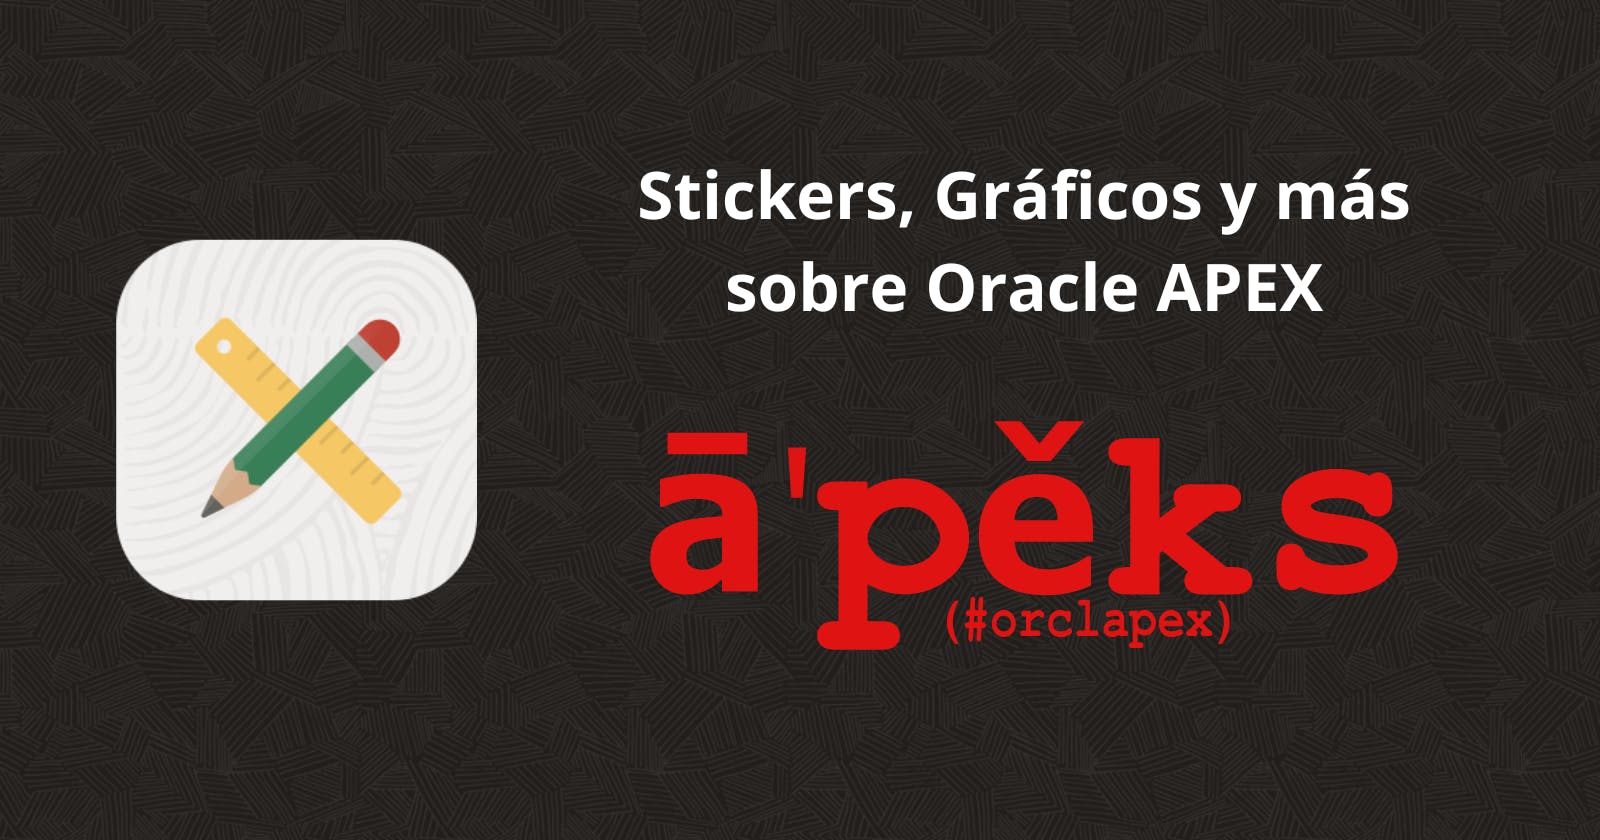 Stickers, Gráficos y más sobre Oracle APEX